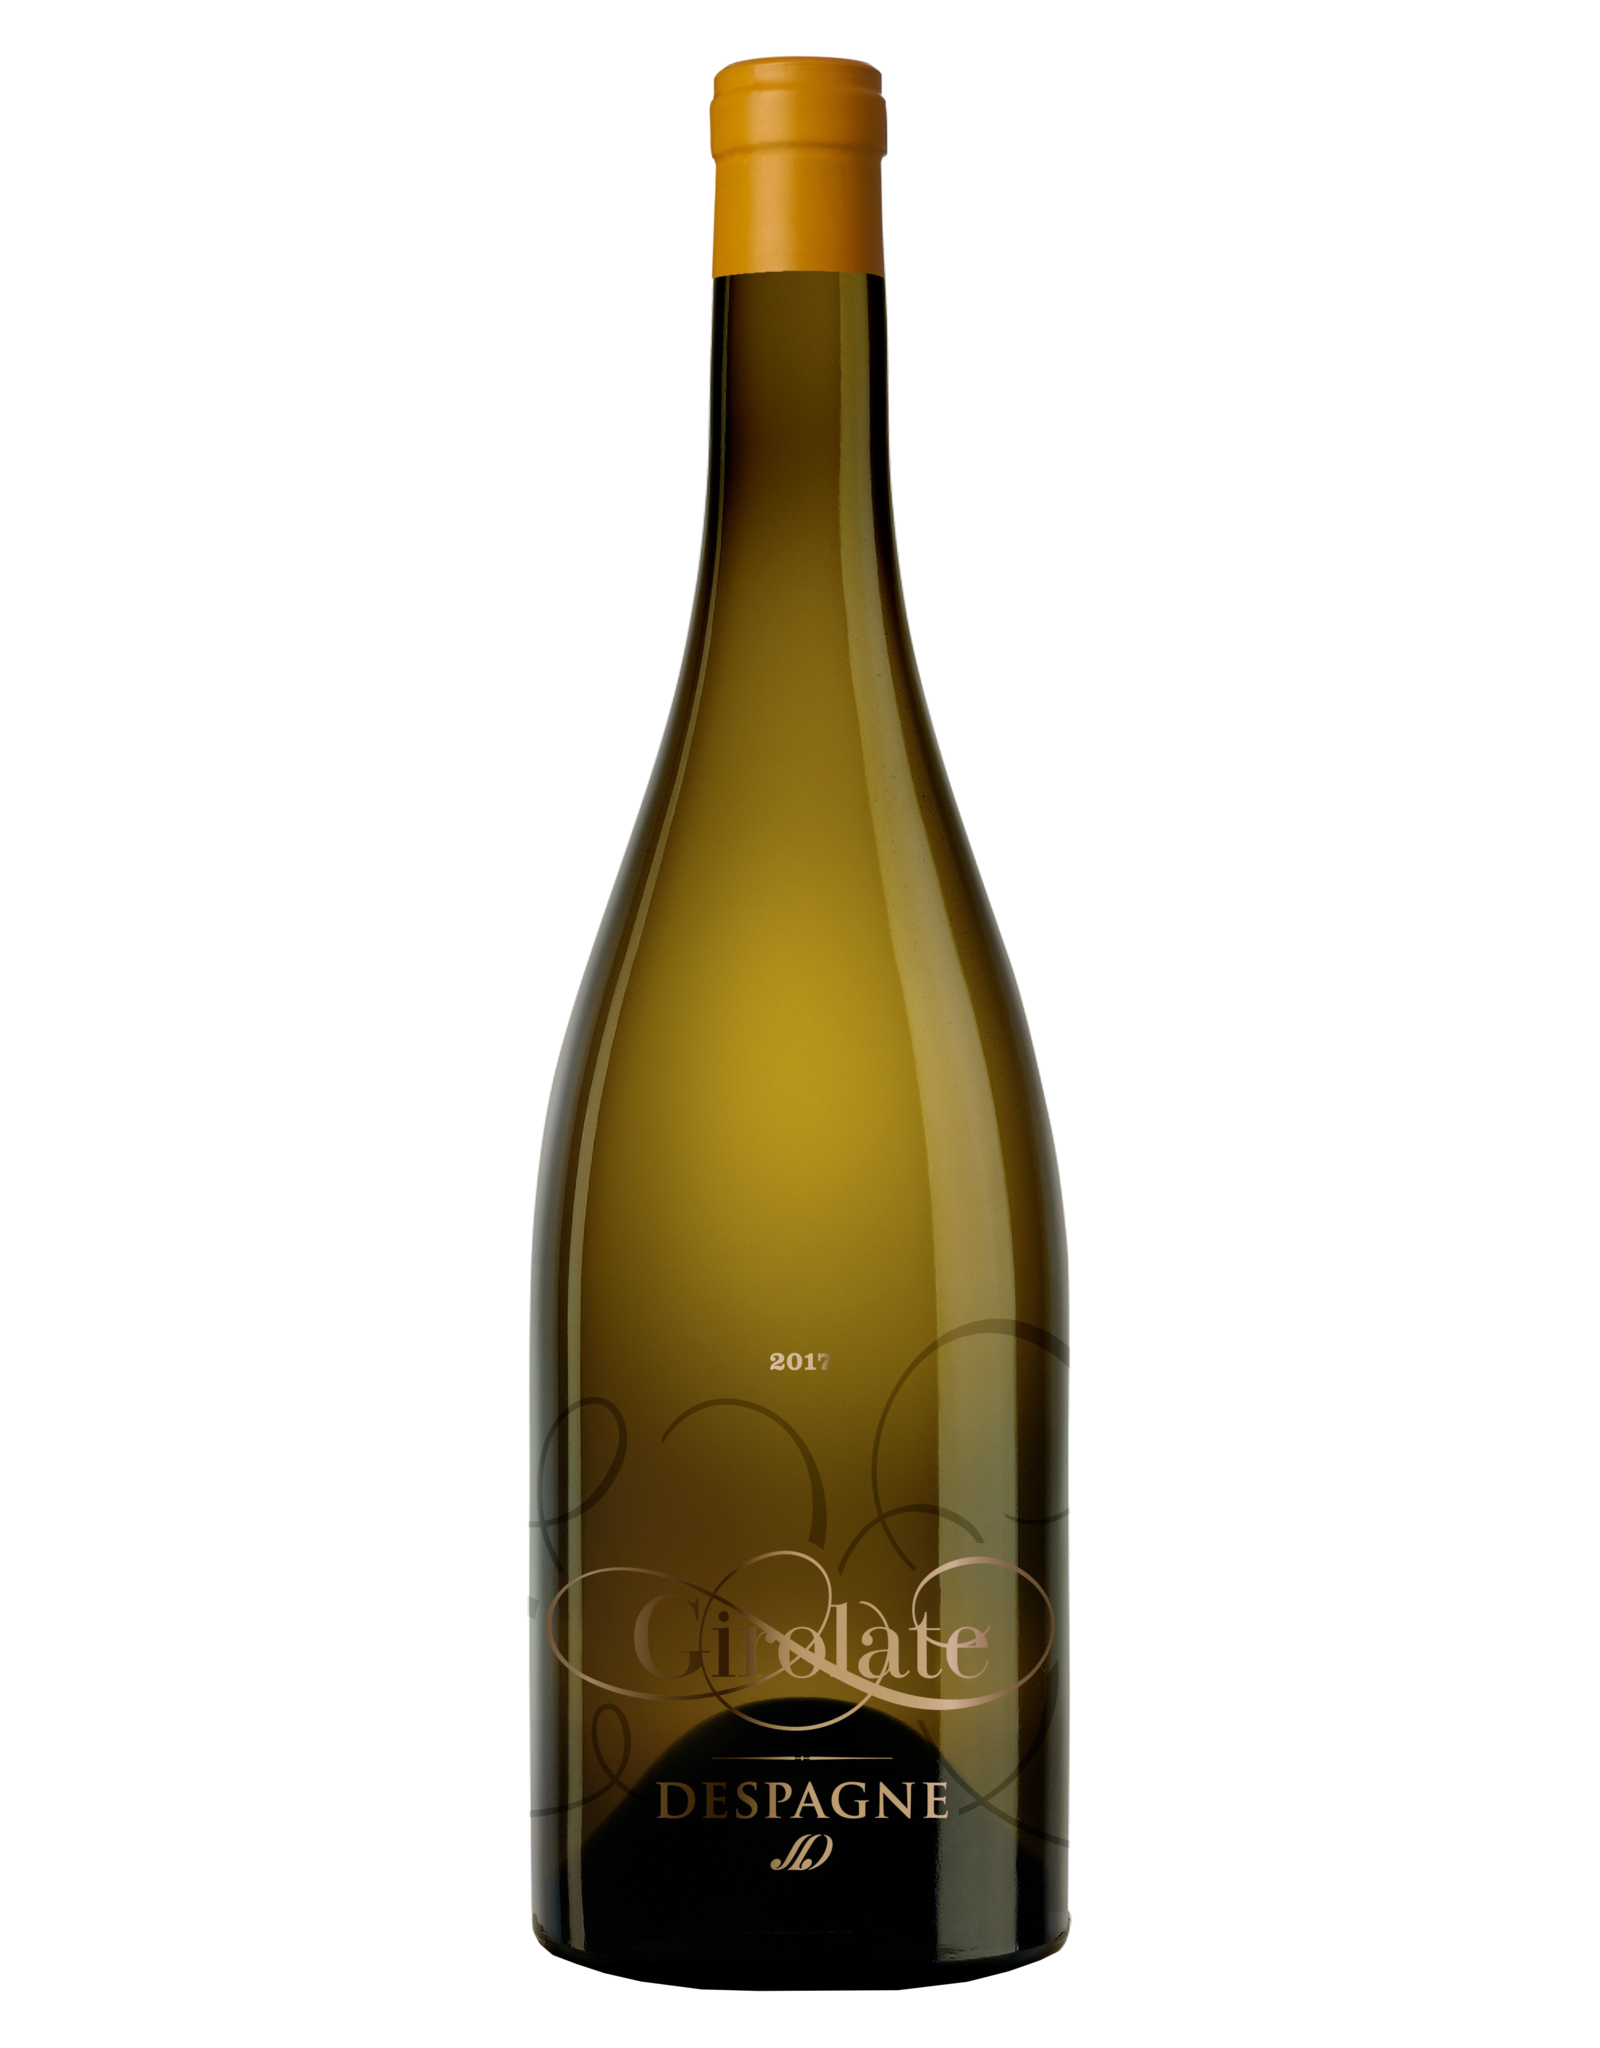 Château Rauzan Despagne Girolate Blanc 2015 - Bordeaux